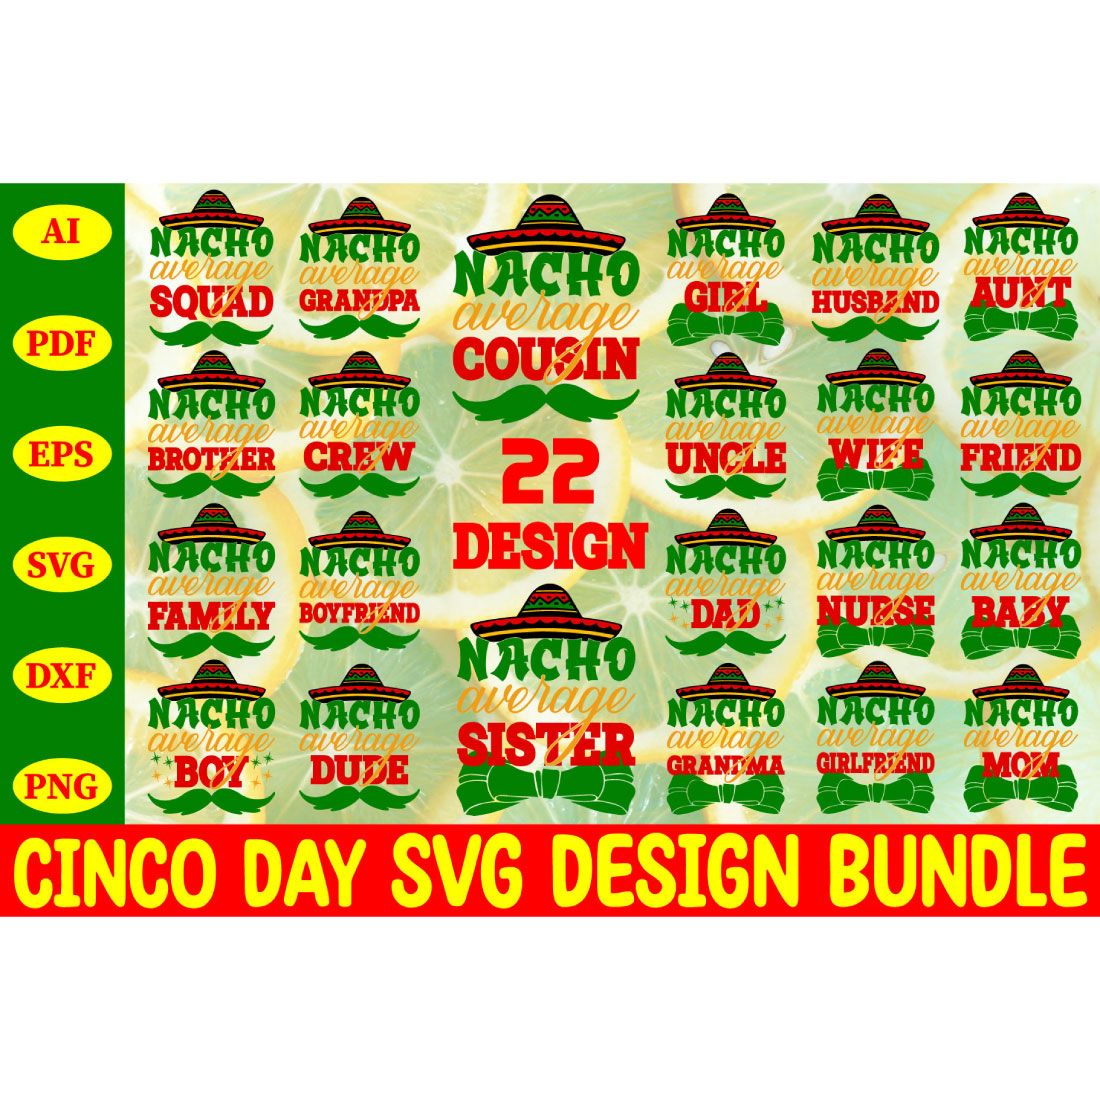 Cinco Day Svg Design Bundle cover image.